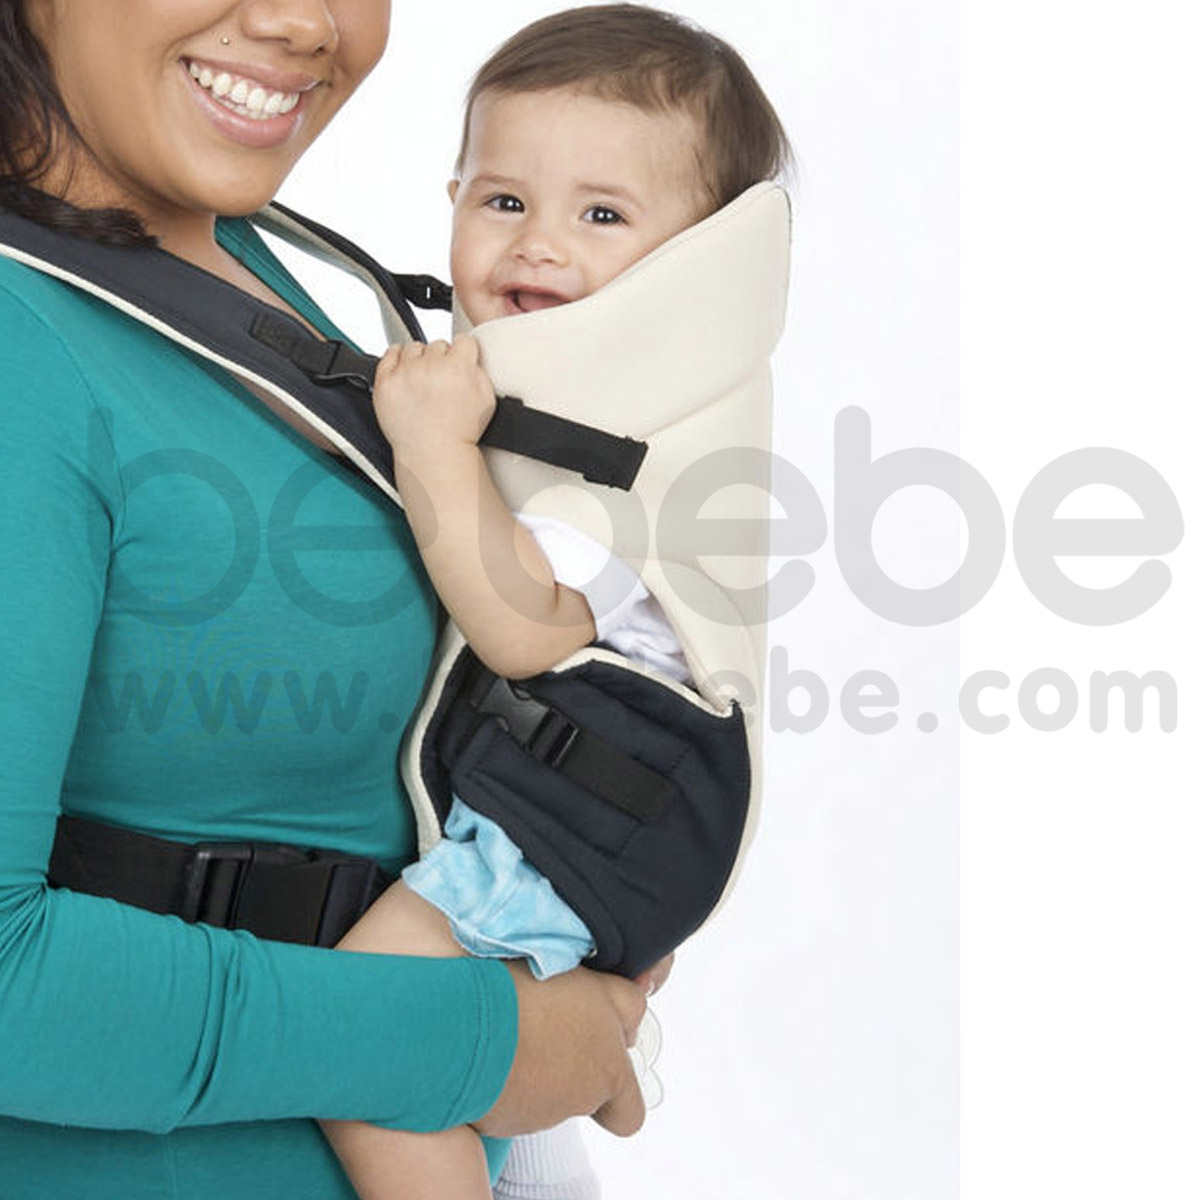 เป้อุ้มเด็ก be bebe : Baby Carrier 3in1  สีเบจ+น้ำเงิน สุดเท่+สะดวกในการอุ้มลูก / BB002